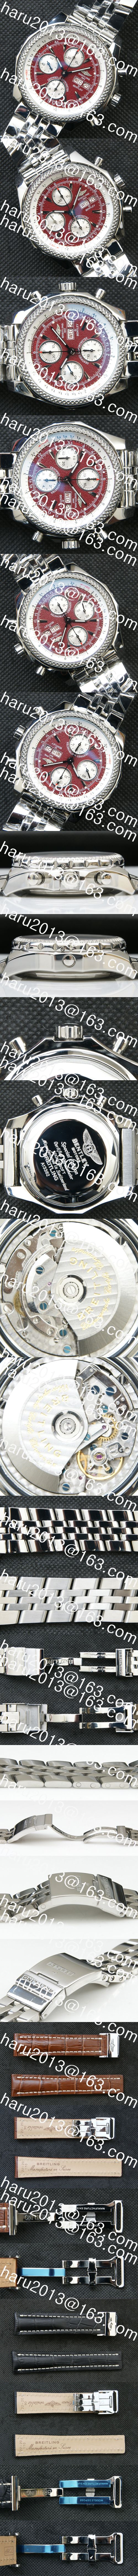 【通信販売】ブライトリング ベントレー GTレーシング 防水腕時計